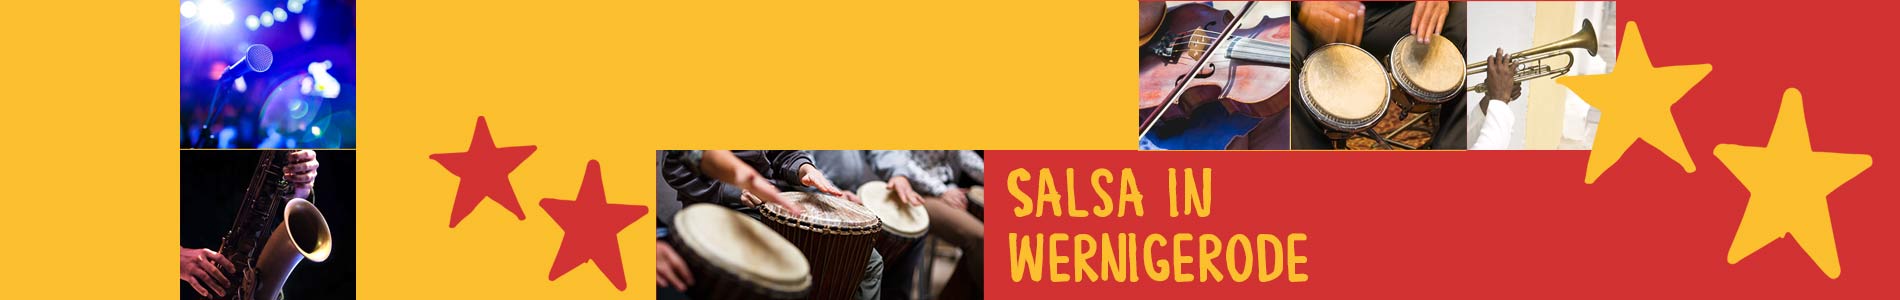 Salsa in Wernigerode – Salsa lernen und tanzen, Tanzkurse, Partys, Veranstaltungen